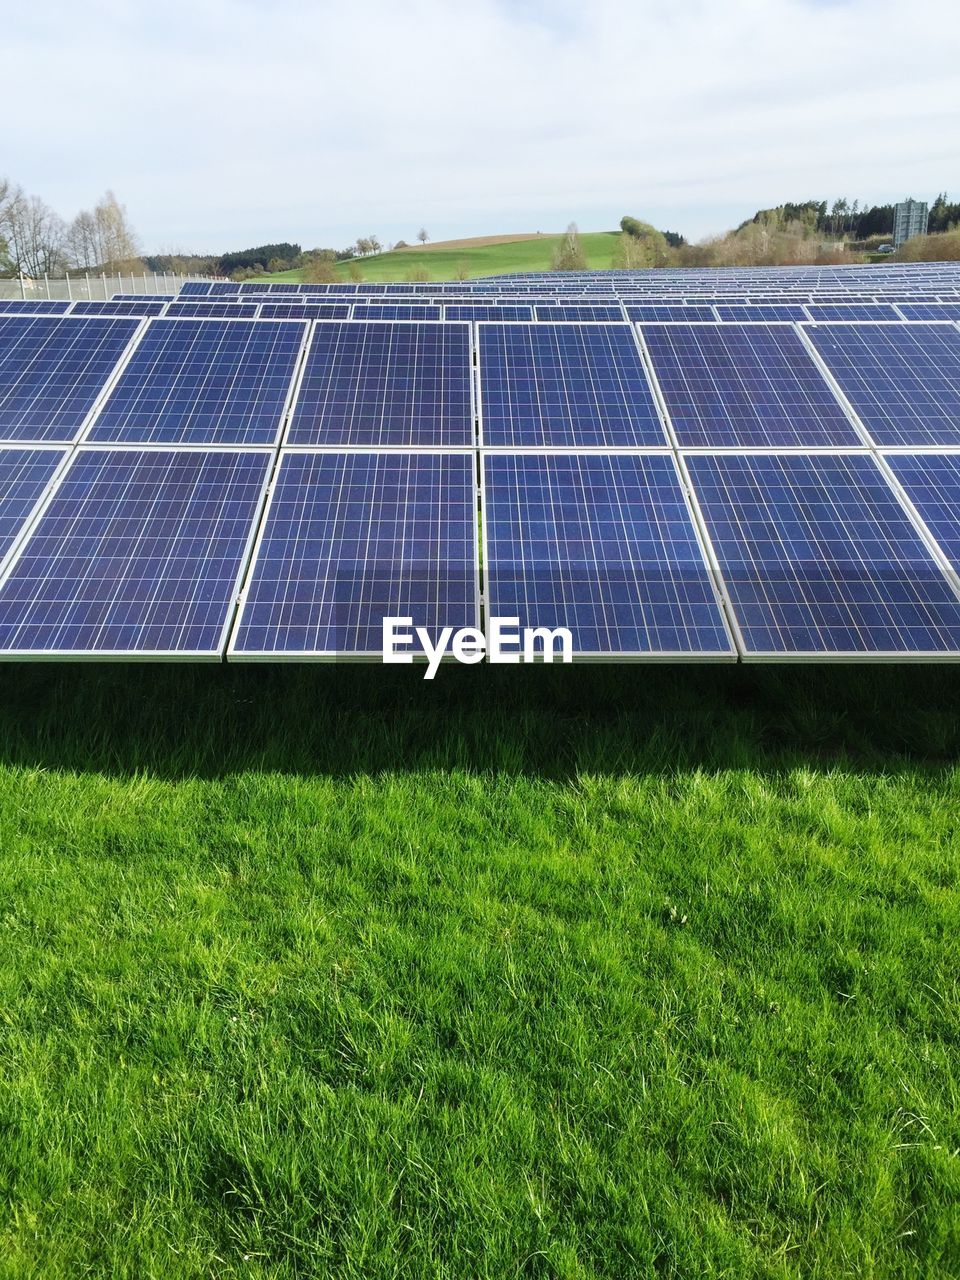 Solar panel on grassy field